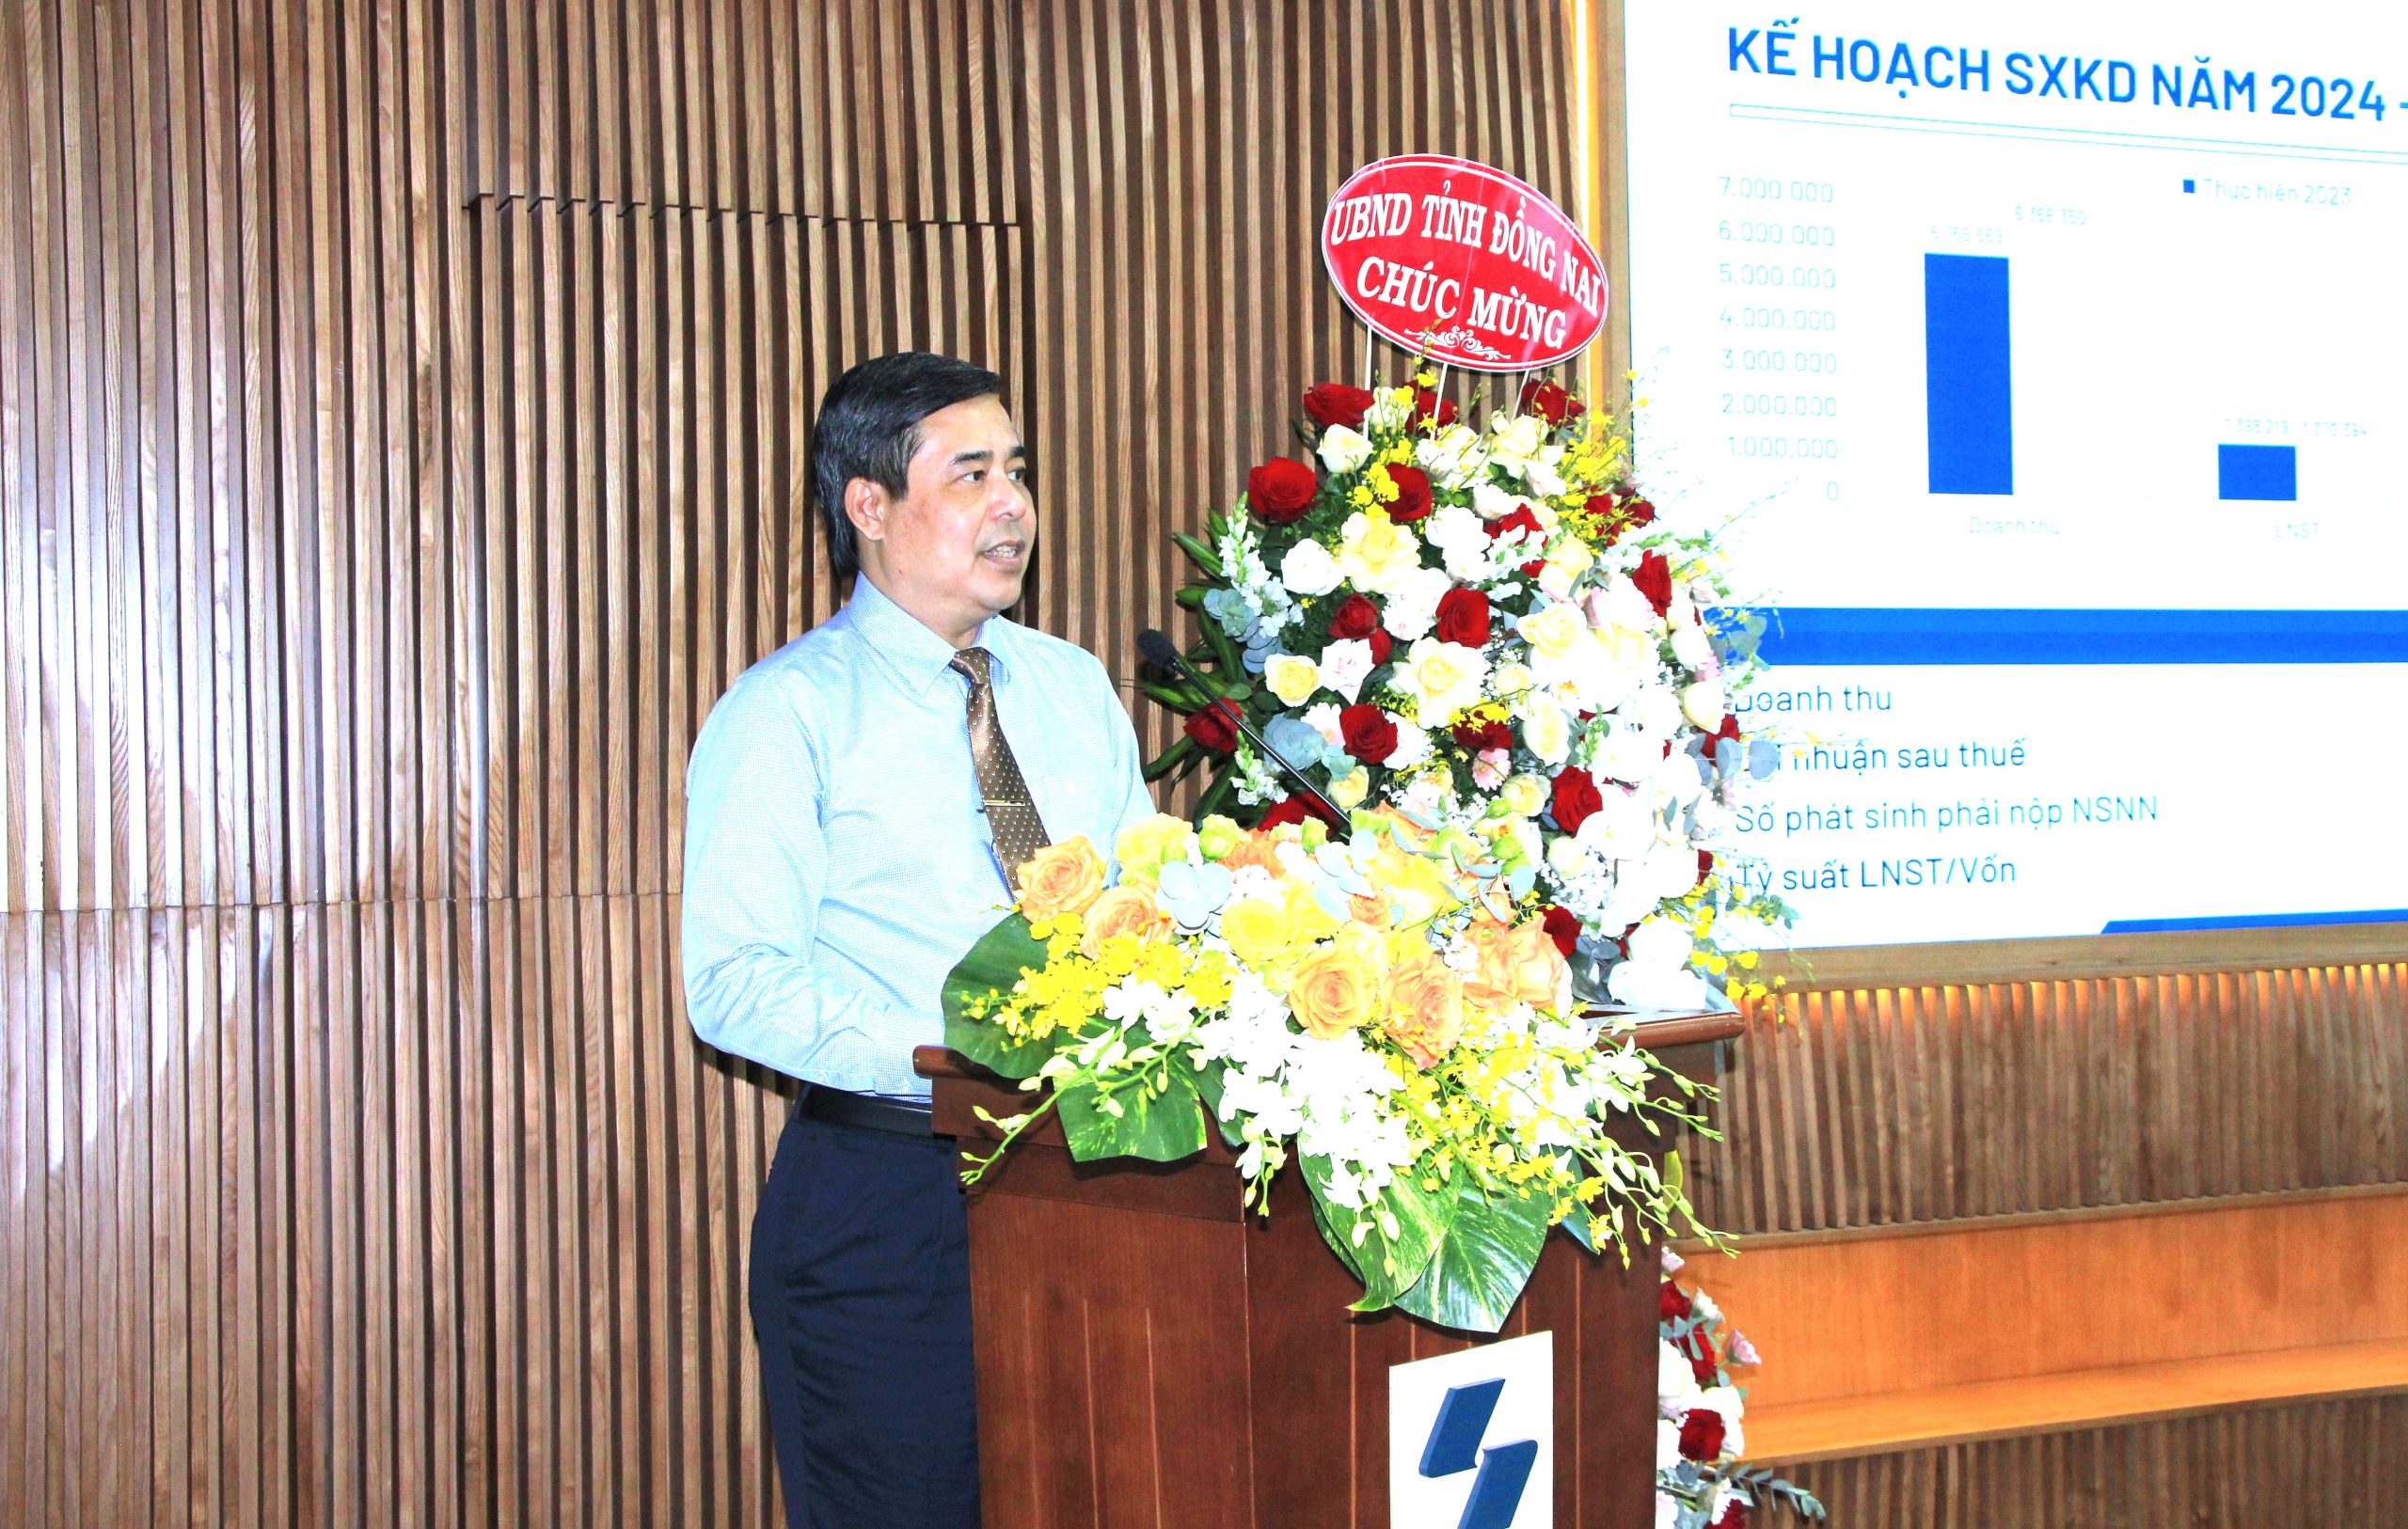 Ông Trần Thanh Hải - Thành viên HĐQT, Tổng giám đốc Sonadezi báo cáo về kết quả sản xuất kinh doanh năm 2023 và kế hoạch năm 2024